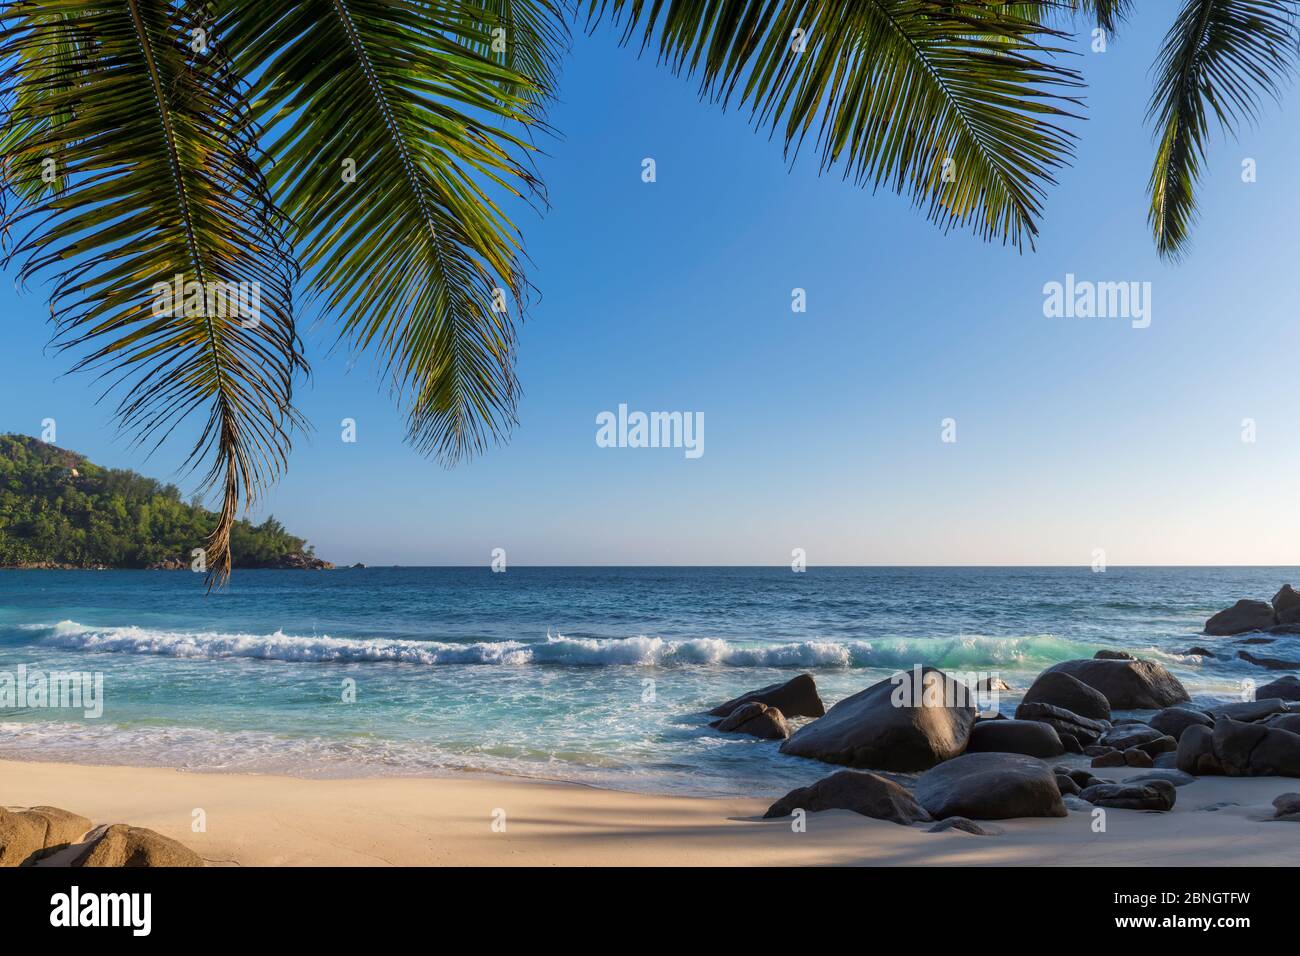 Palmiers sur la plage tropicale ensoleillée Banque D'Images